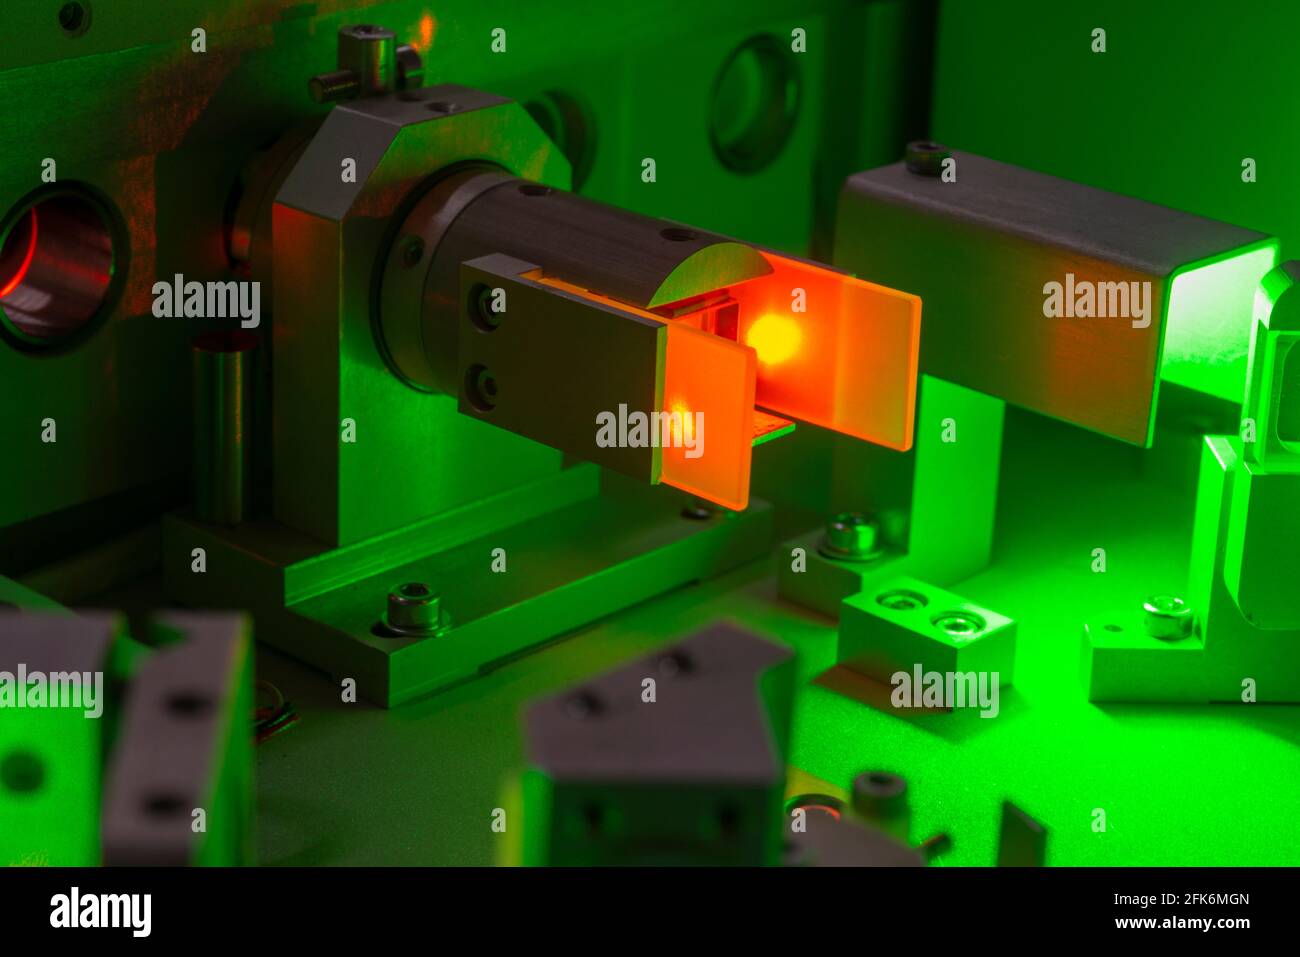 Wellenlängentrennungsmechanismus des wissenschaftlichen Lasersystems, helle Flecken haben typische Speckle-Struktur - es ist Merkmal des Laserlichts Stockfoto